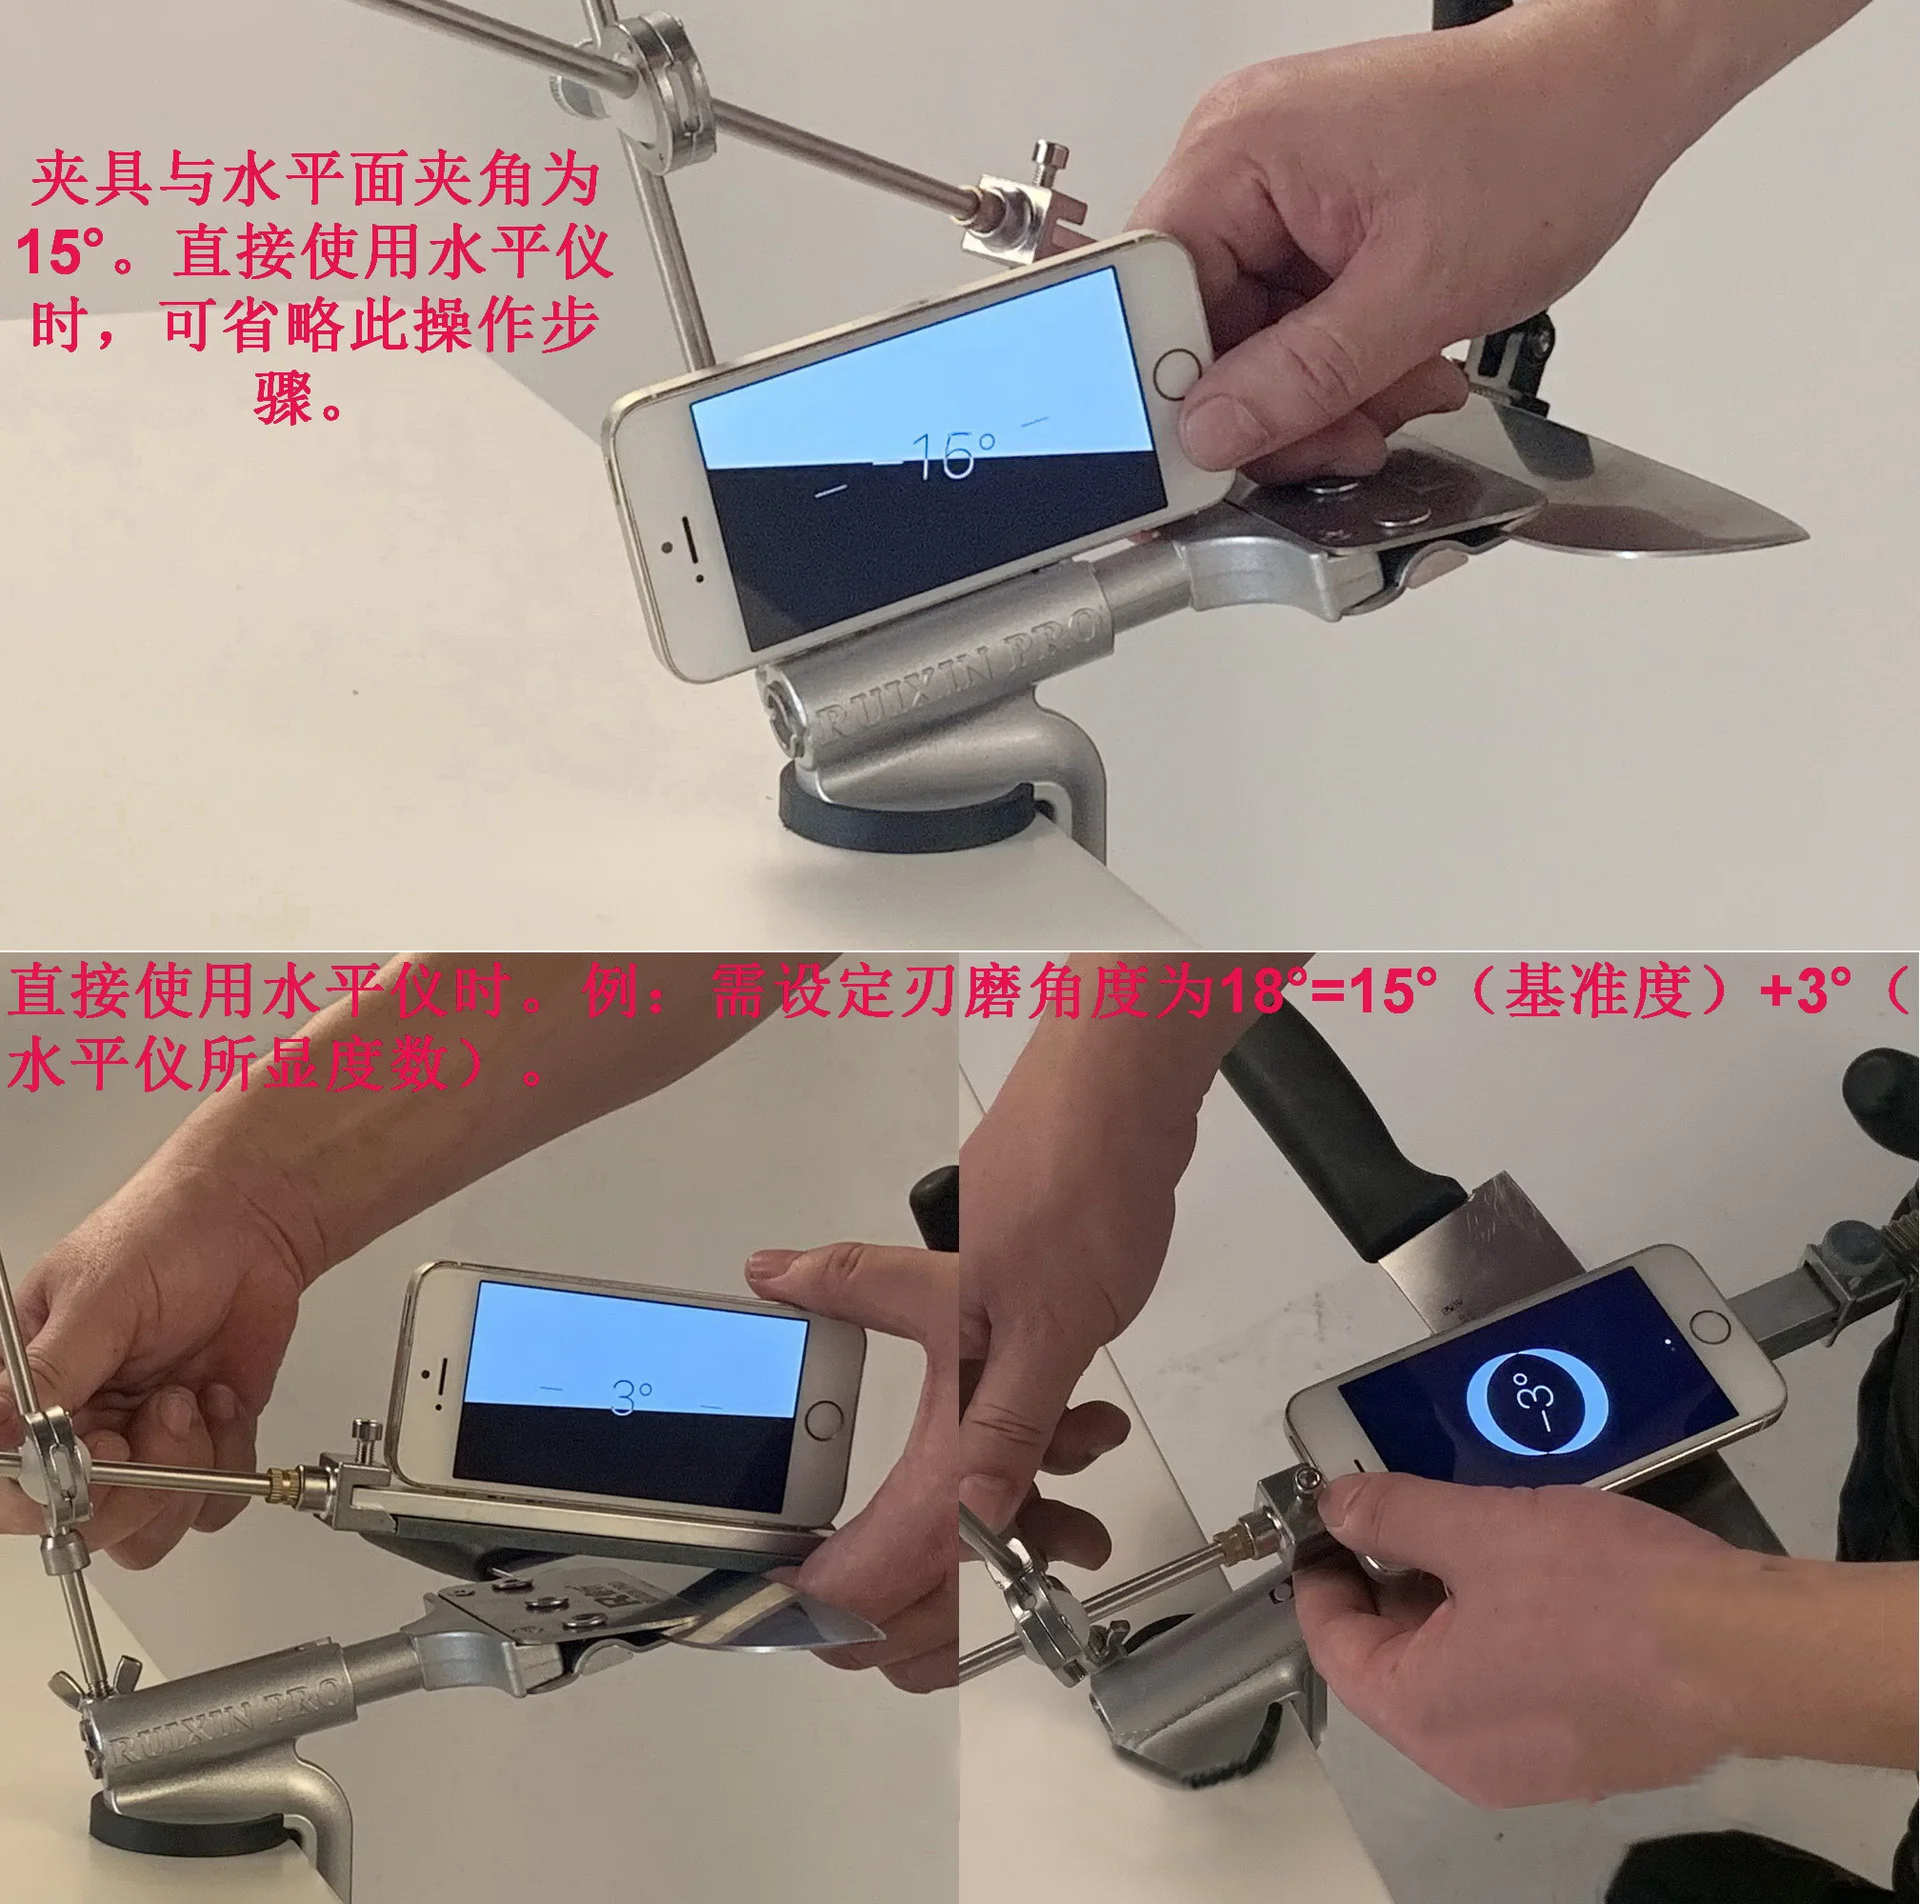 Профессиональная точилка для ножей все новые Ruixin Pro система заточки ножей Алмазный точильный камень заточка лезвия ножа